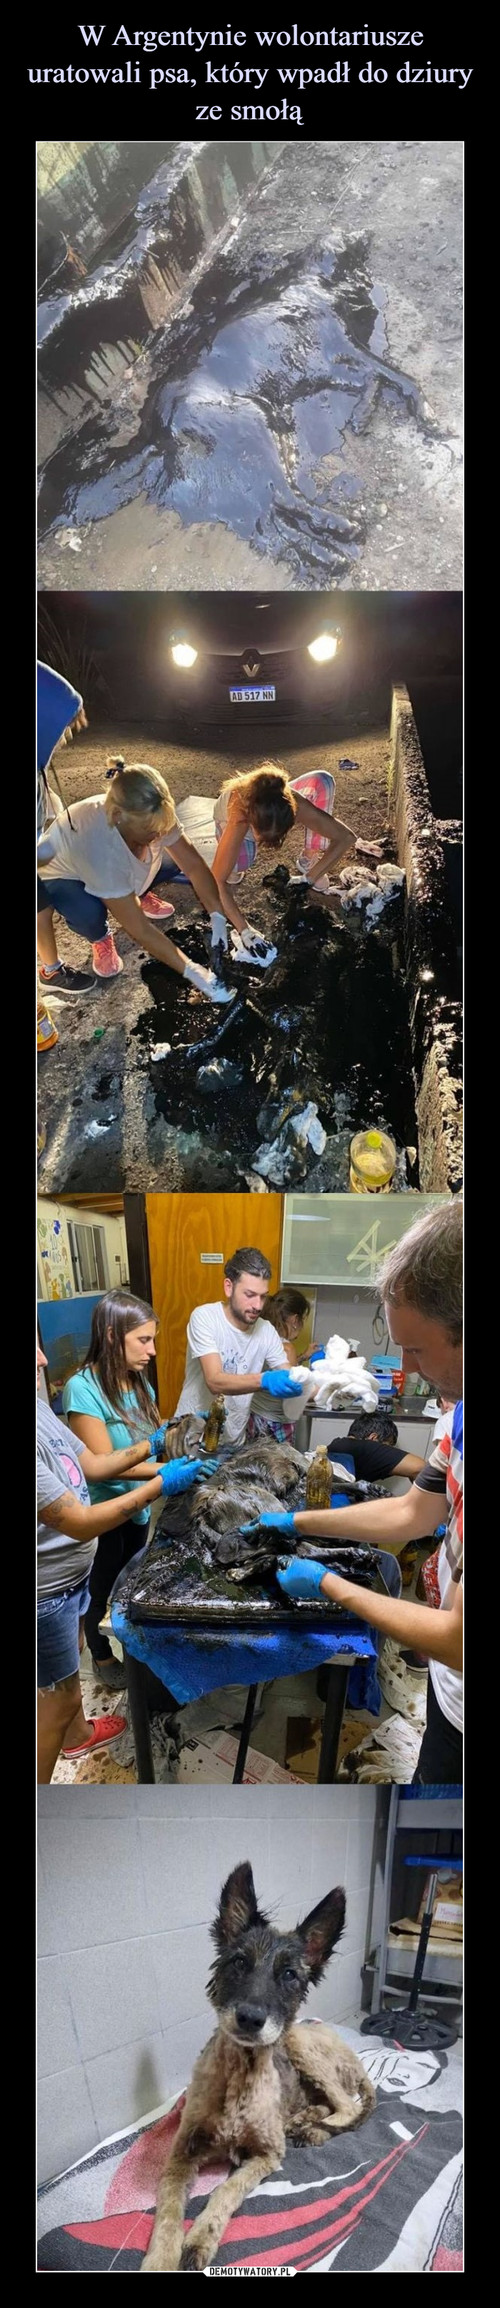 W Argentynie wolontariusze uratowali psa, który wpadł do dziury ze smołą